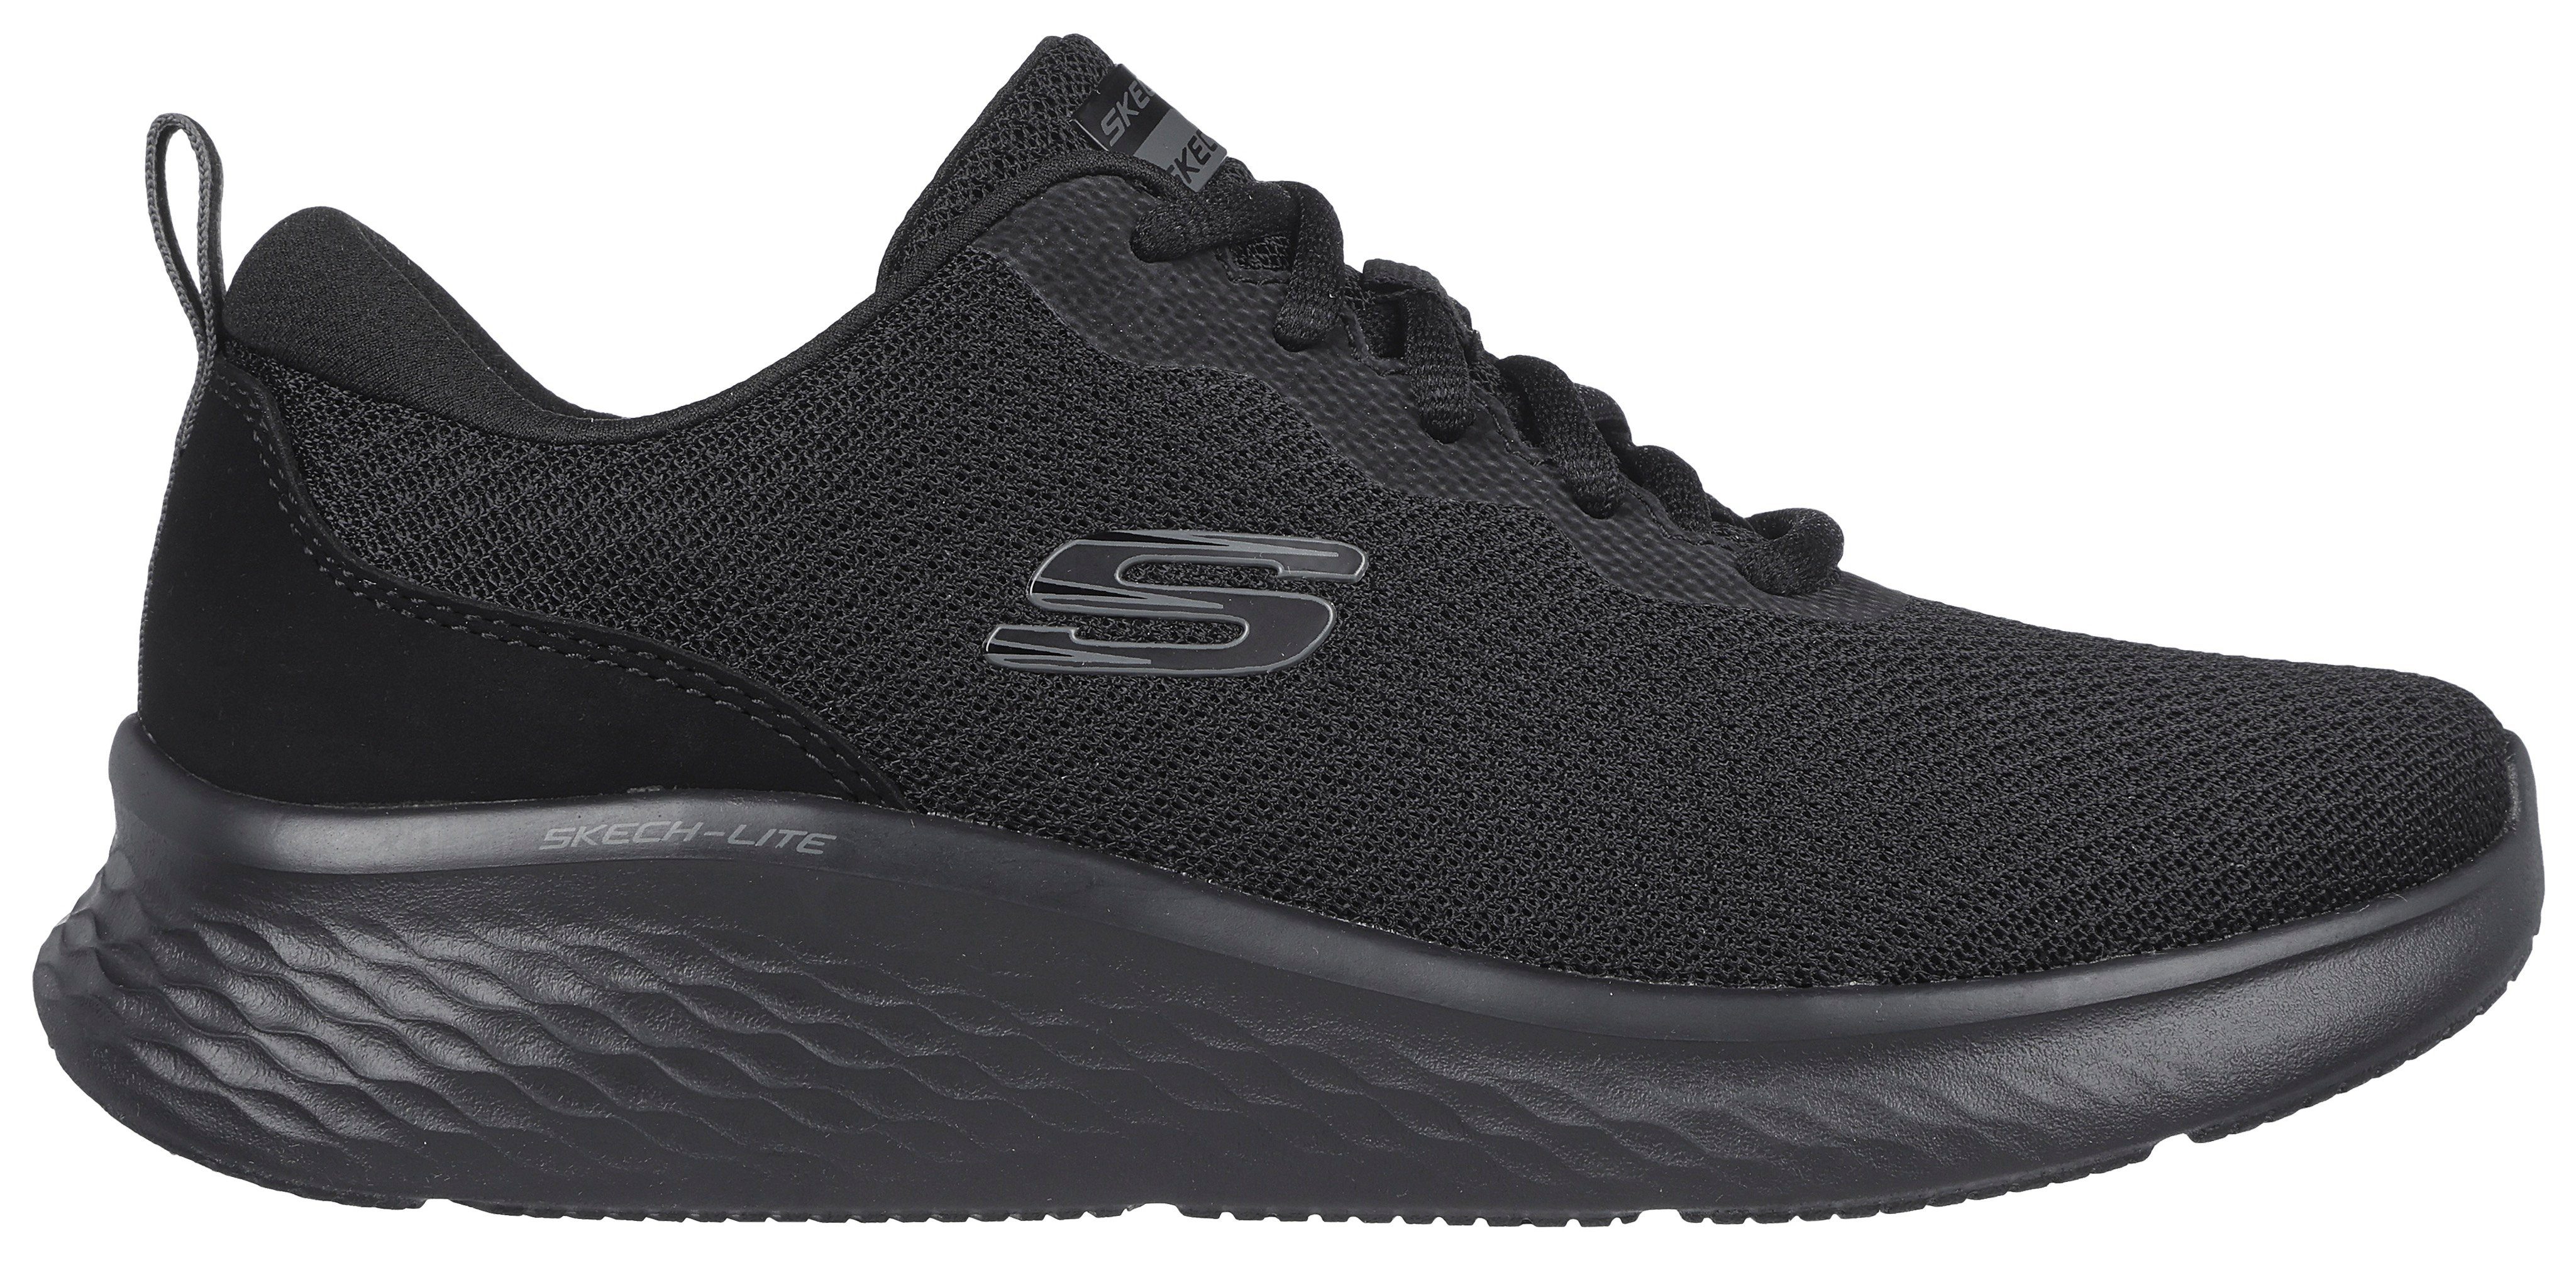 SKECH-LITE Sneaker für geeignet PRO- schwarz-uni Skechers Maschinenwäsche